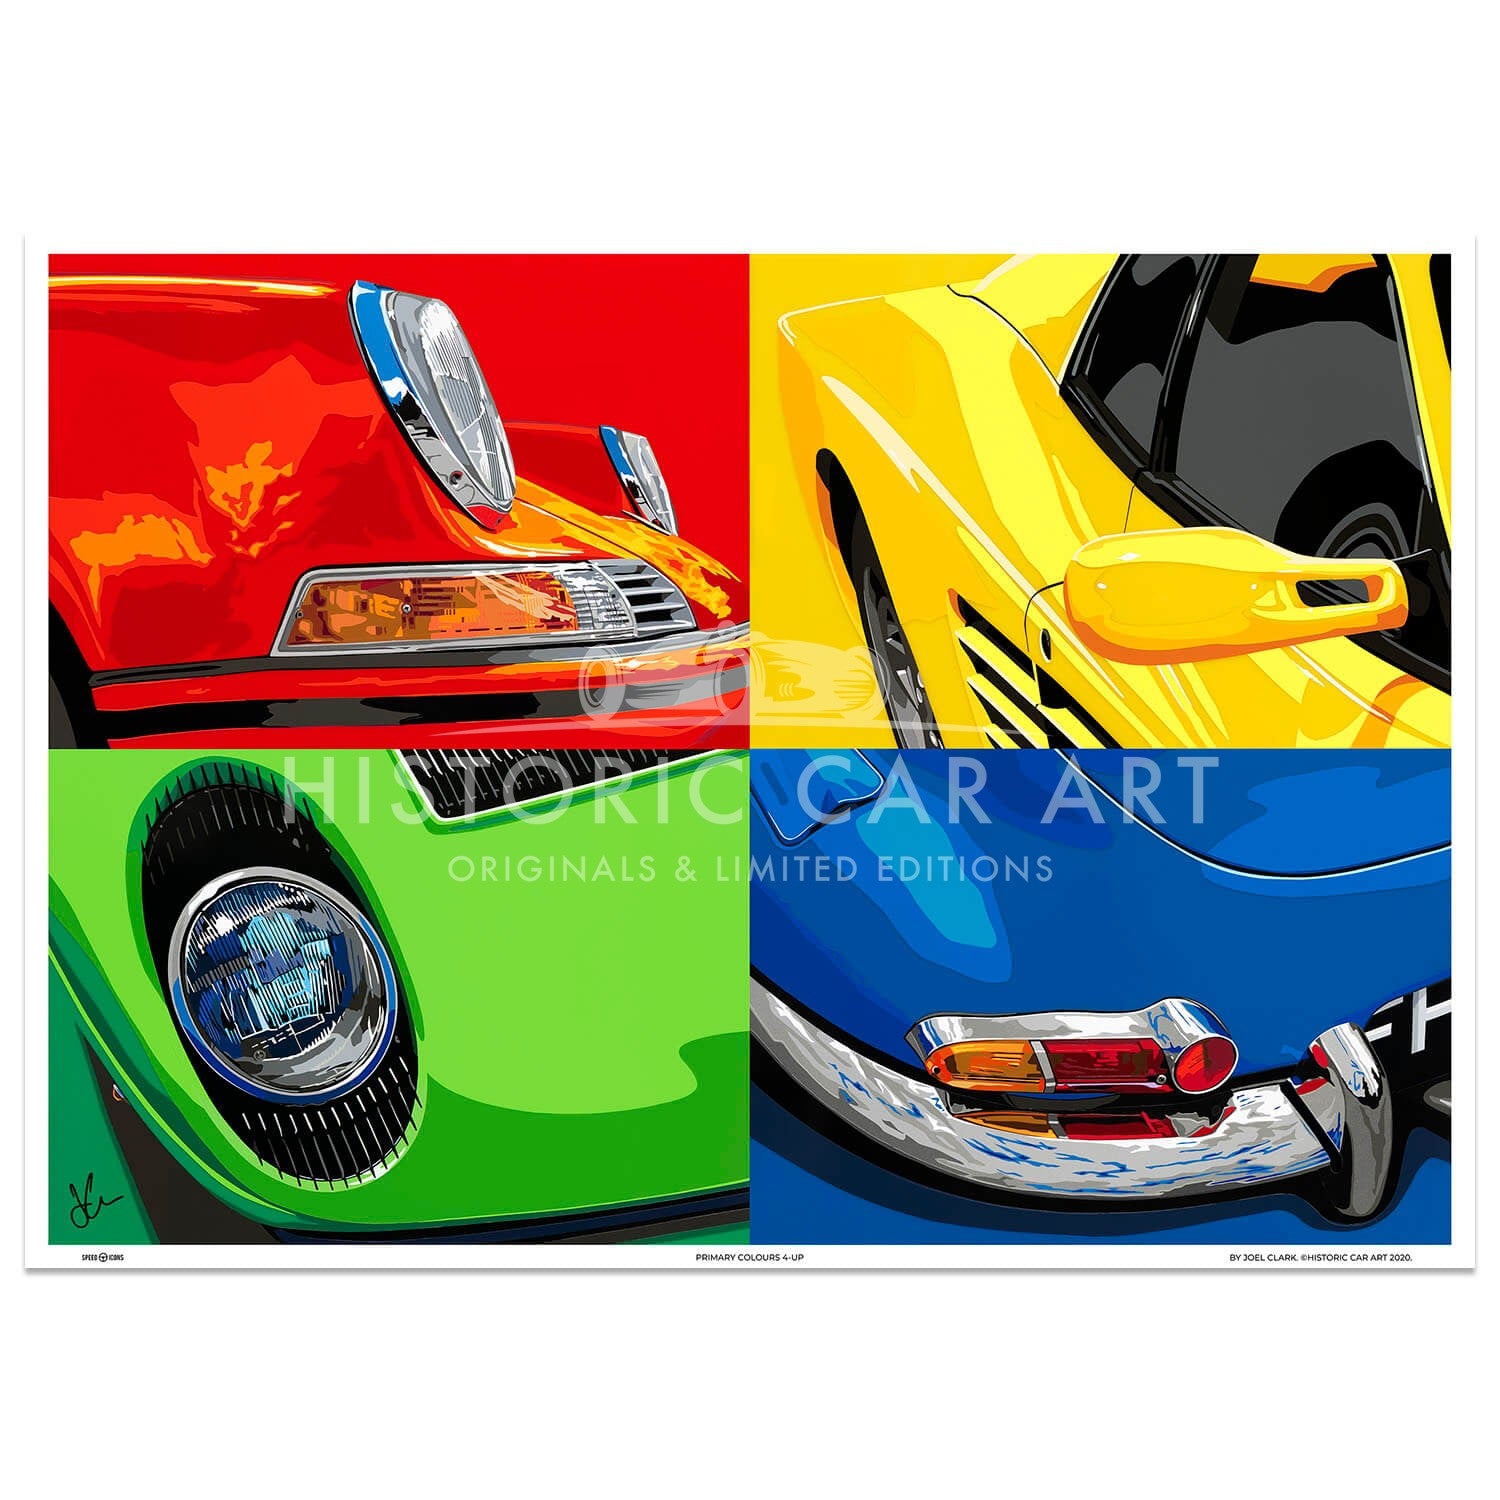 SPEED ICONS: Primary Colours 4-up | Porsche Ferrari Lamborghini Jaguar | Art Print